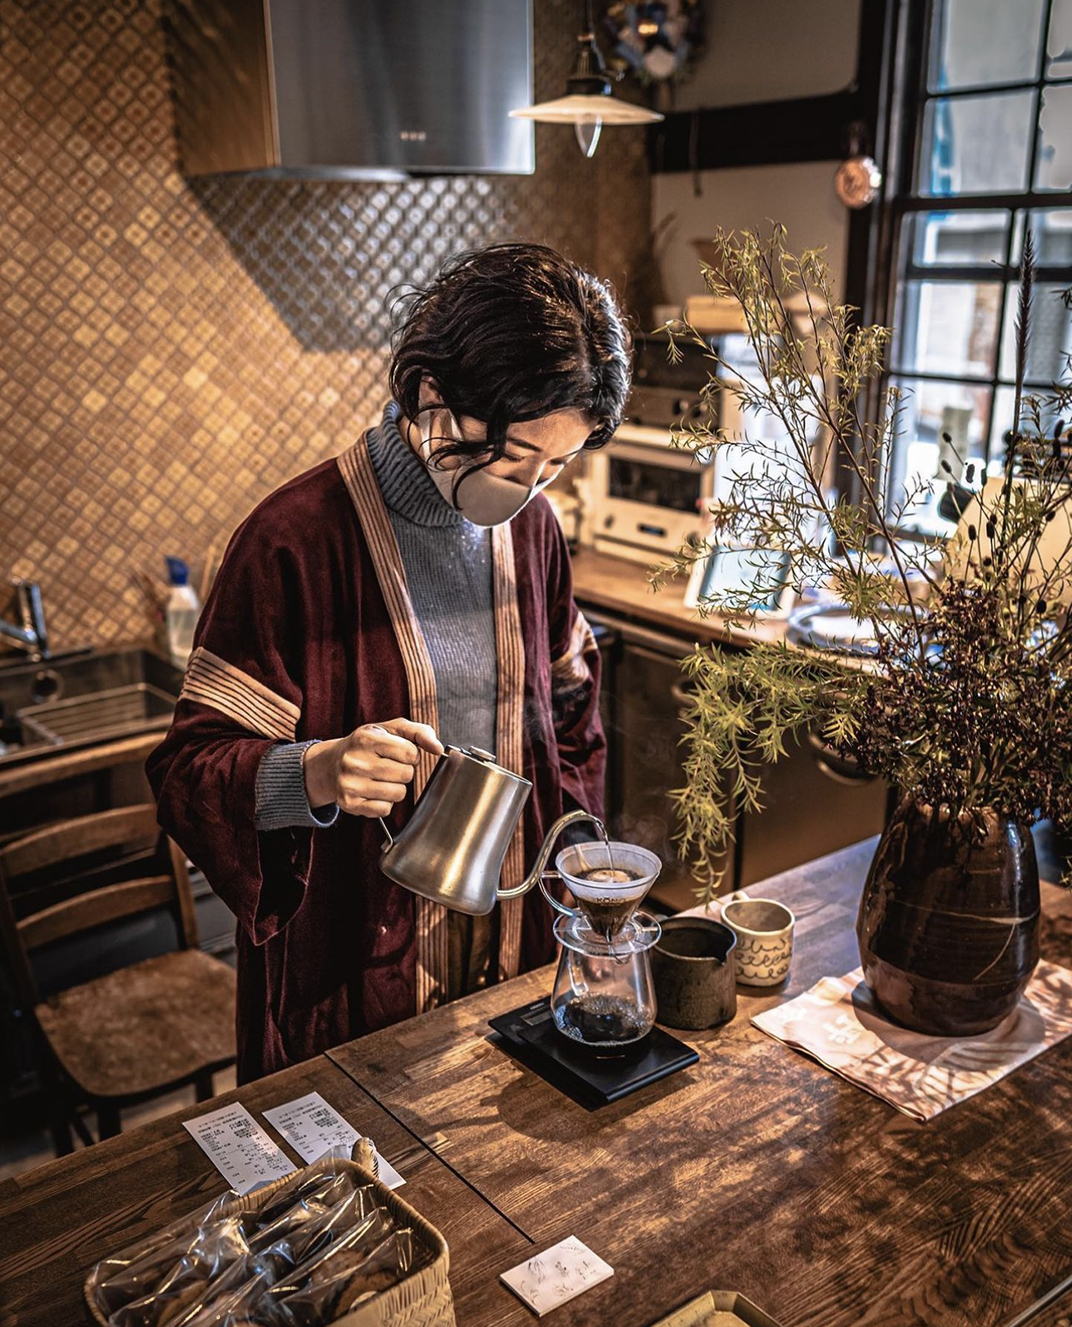 古早氛围咖啡店 北京 上海 成都 武汉 杭州 广州 日本 咖啡馆 古早 复古 木材 logo设计 vi设计 空间设计